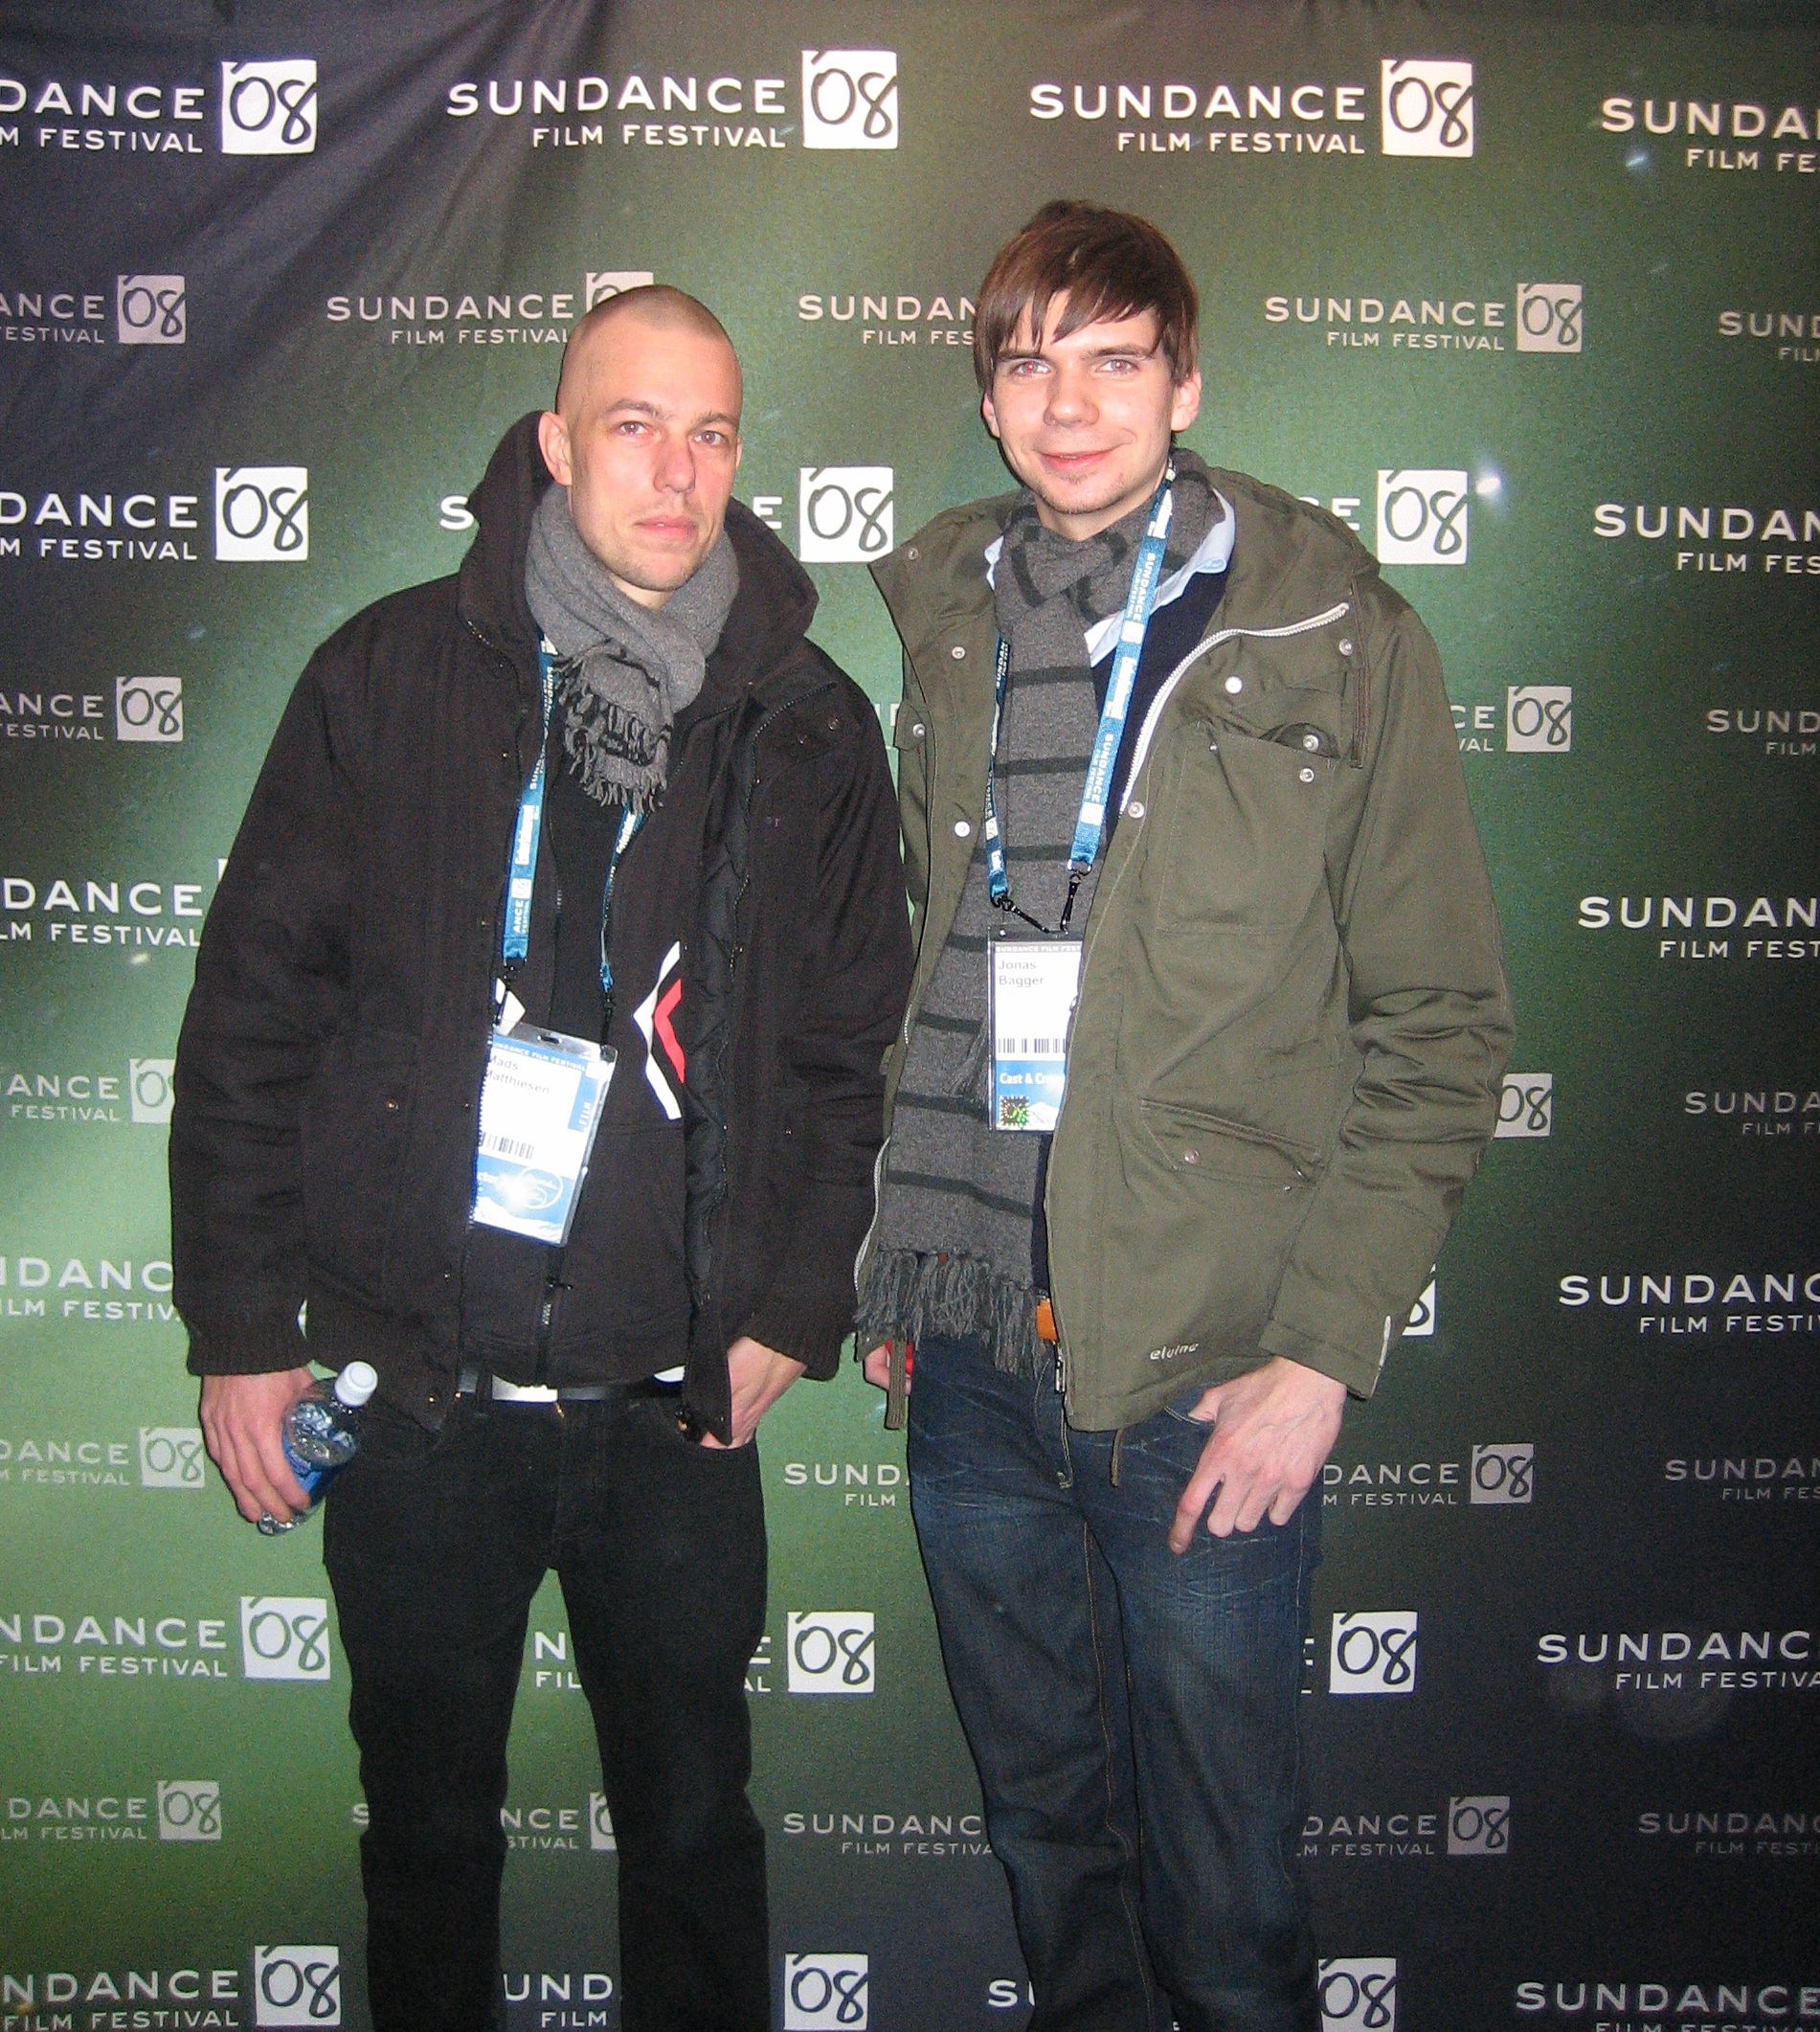 Sundance Film Festival 2008 